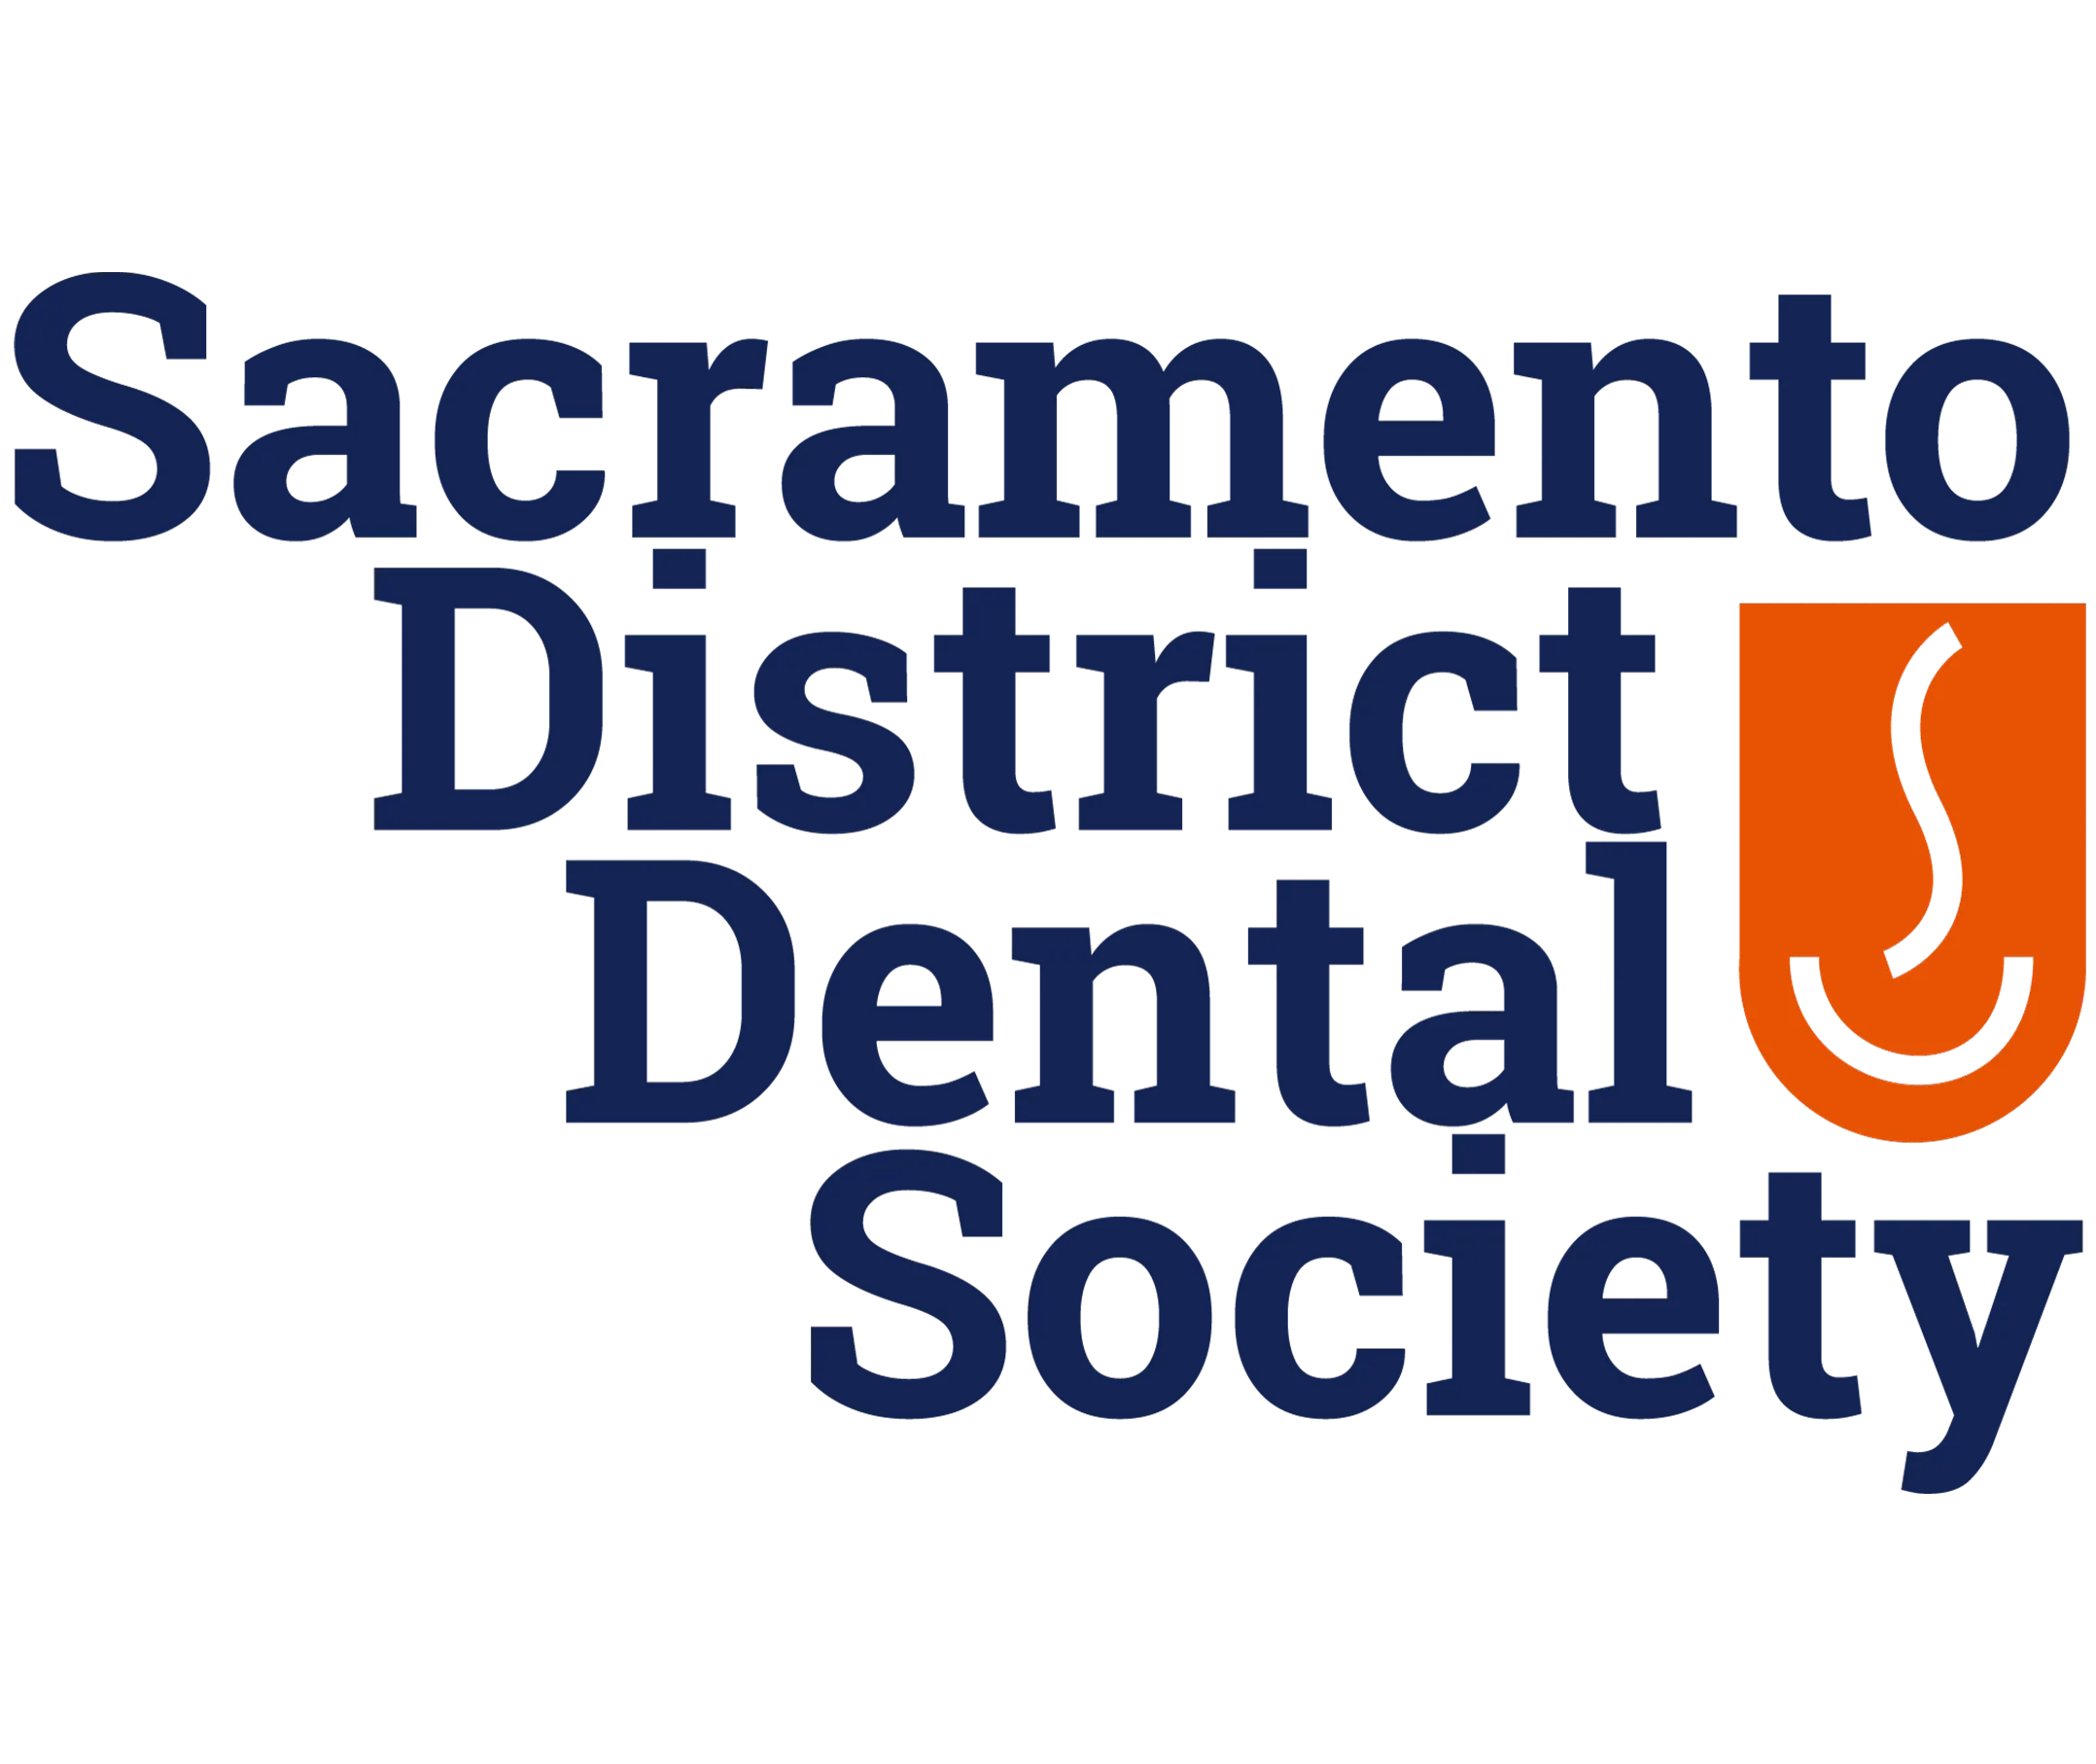 Sacramento District Dental Society